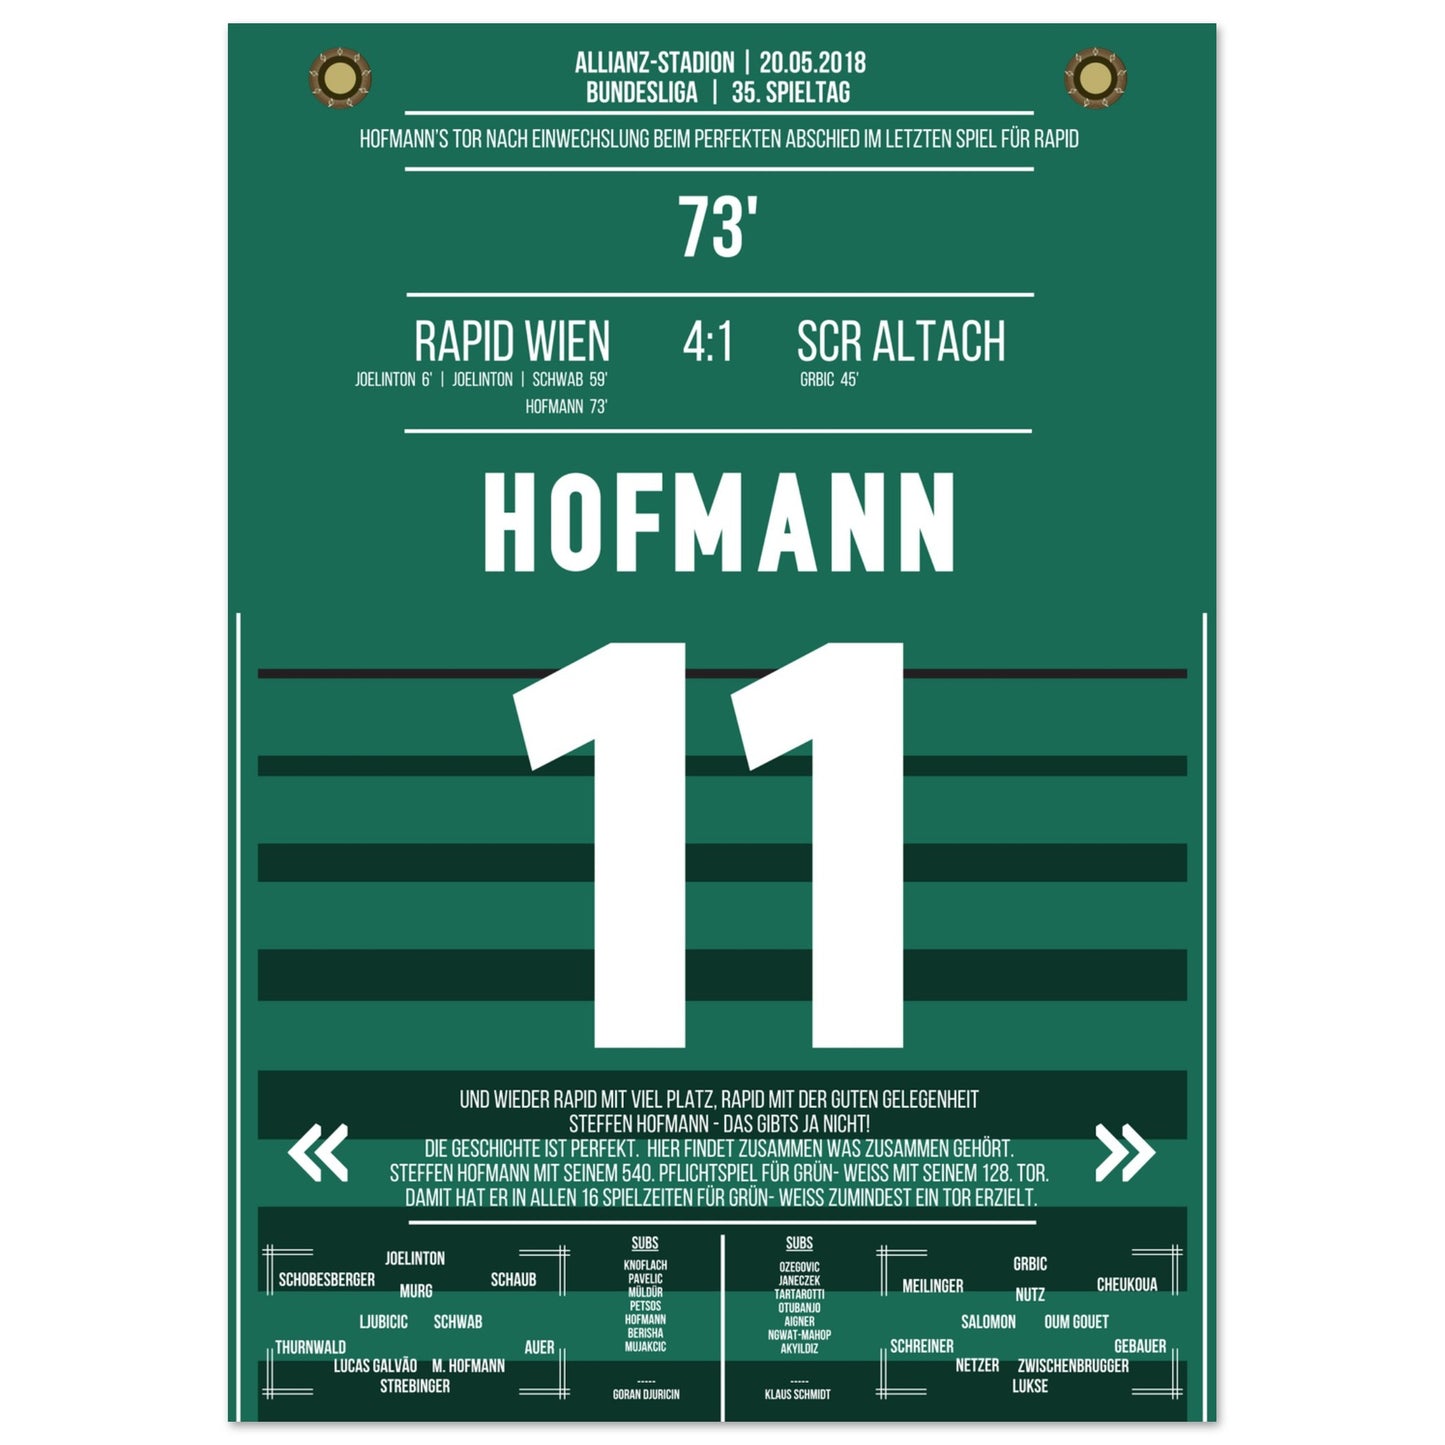 Hofmann's perfekter Abschied im letzten Spiel für Rapid